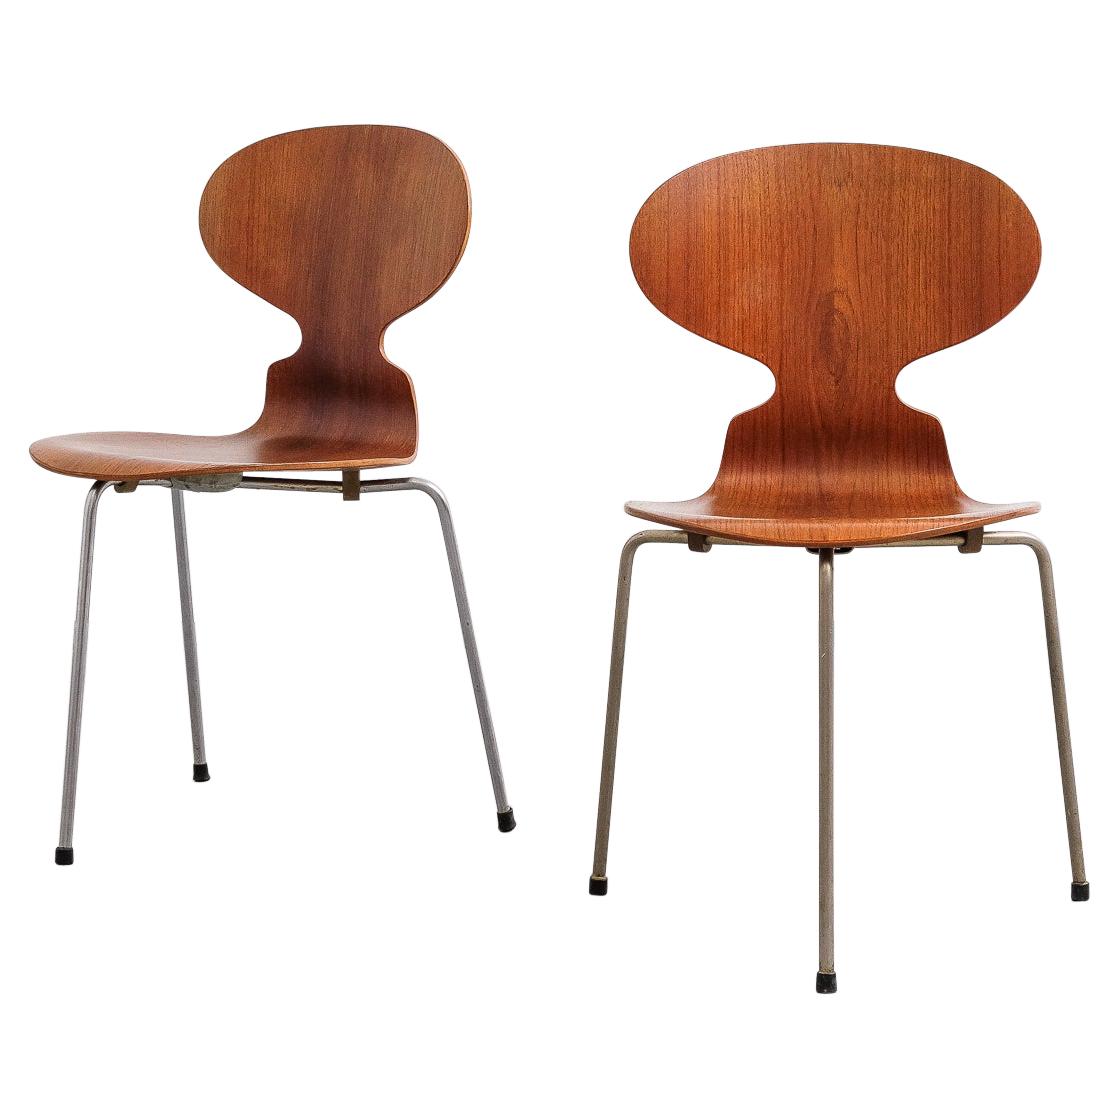 Pair of Teak Ant Chairs 3100 Arne Jacobsen for Fritz Hansen, 1960s at ...